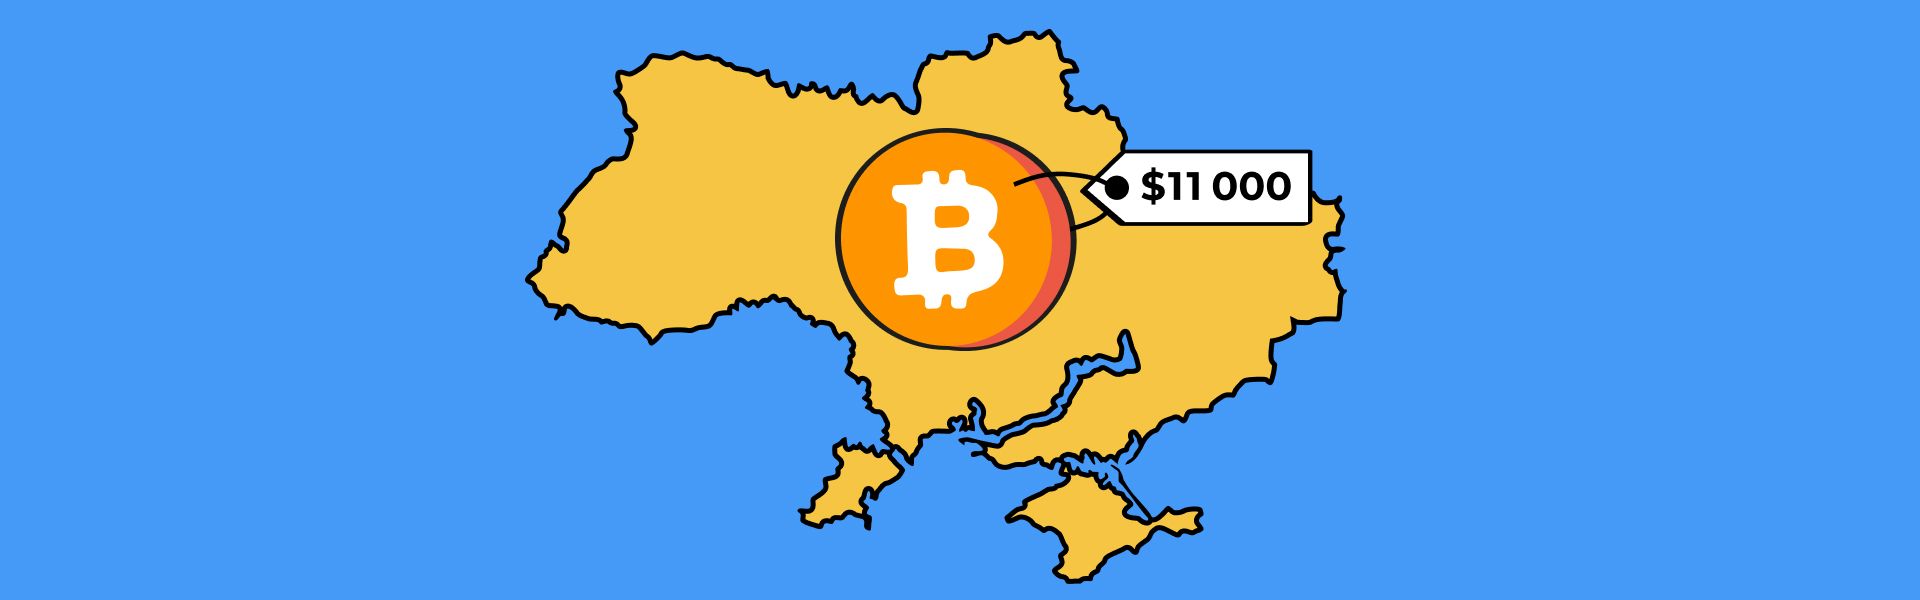 В Україні видобуток 1 BTC коштує $11 000